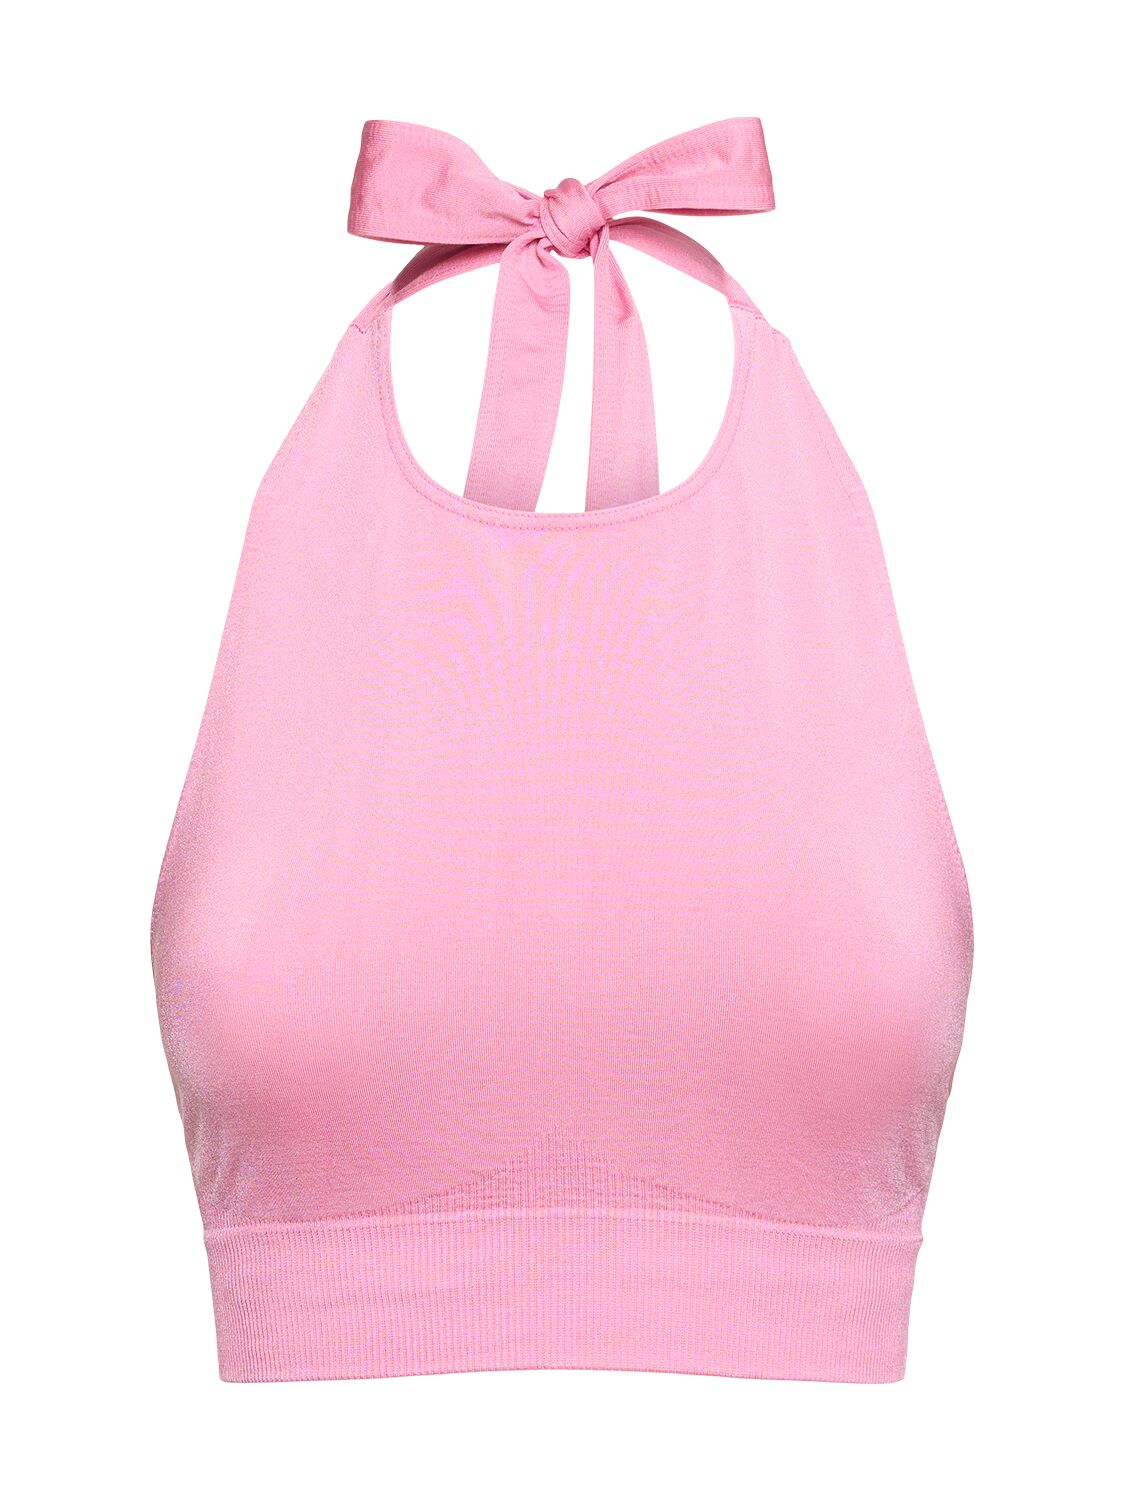 Prism Squared Revitalised Bikini Bra Top In Pink